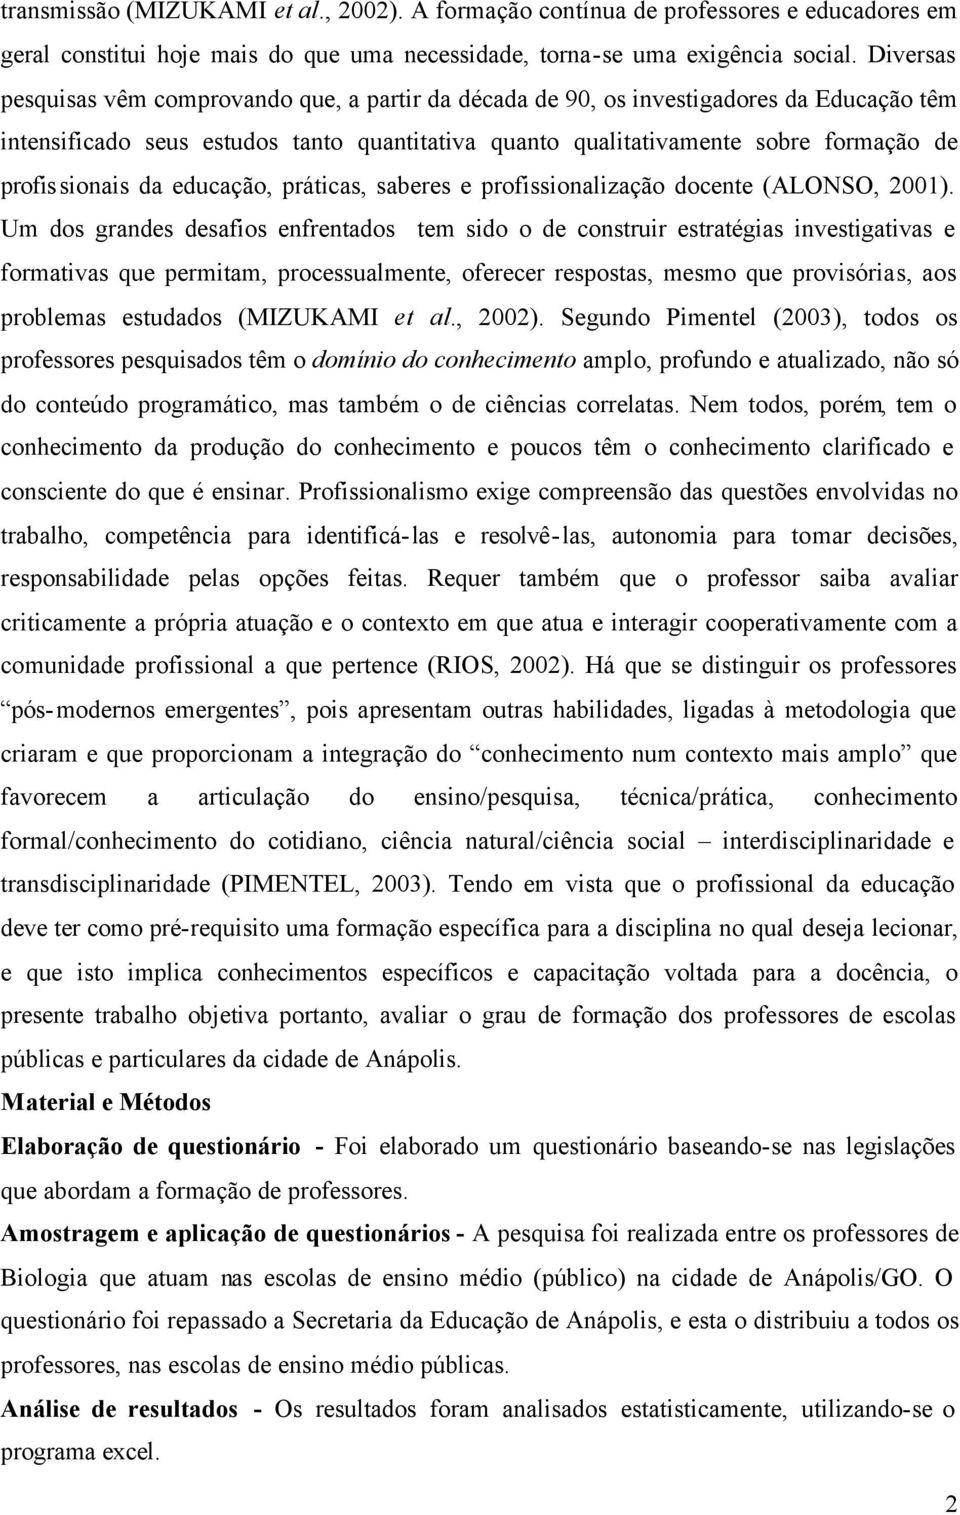 profissionais da educação, práticas, saberes e profissionalização docente (ALONSO, 2001).